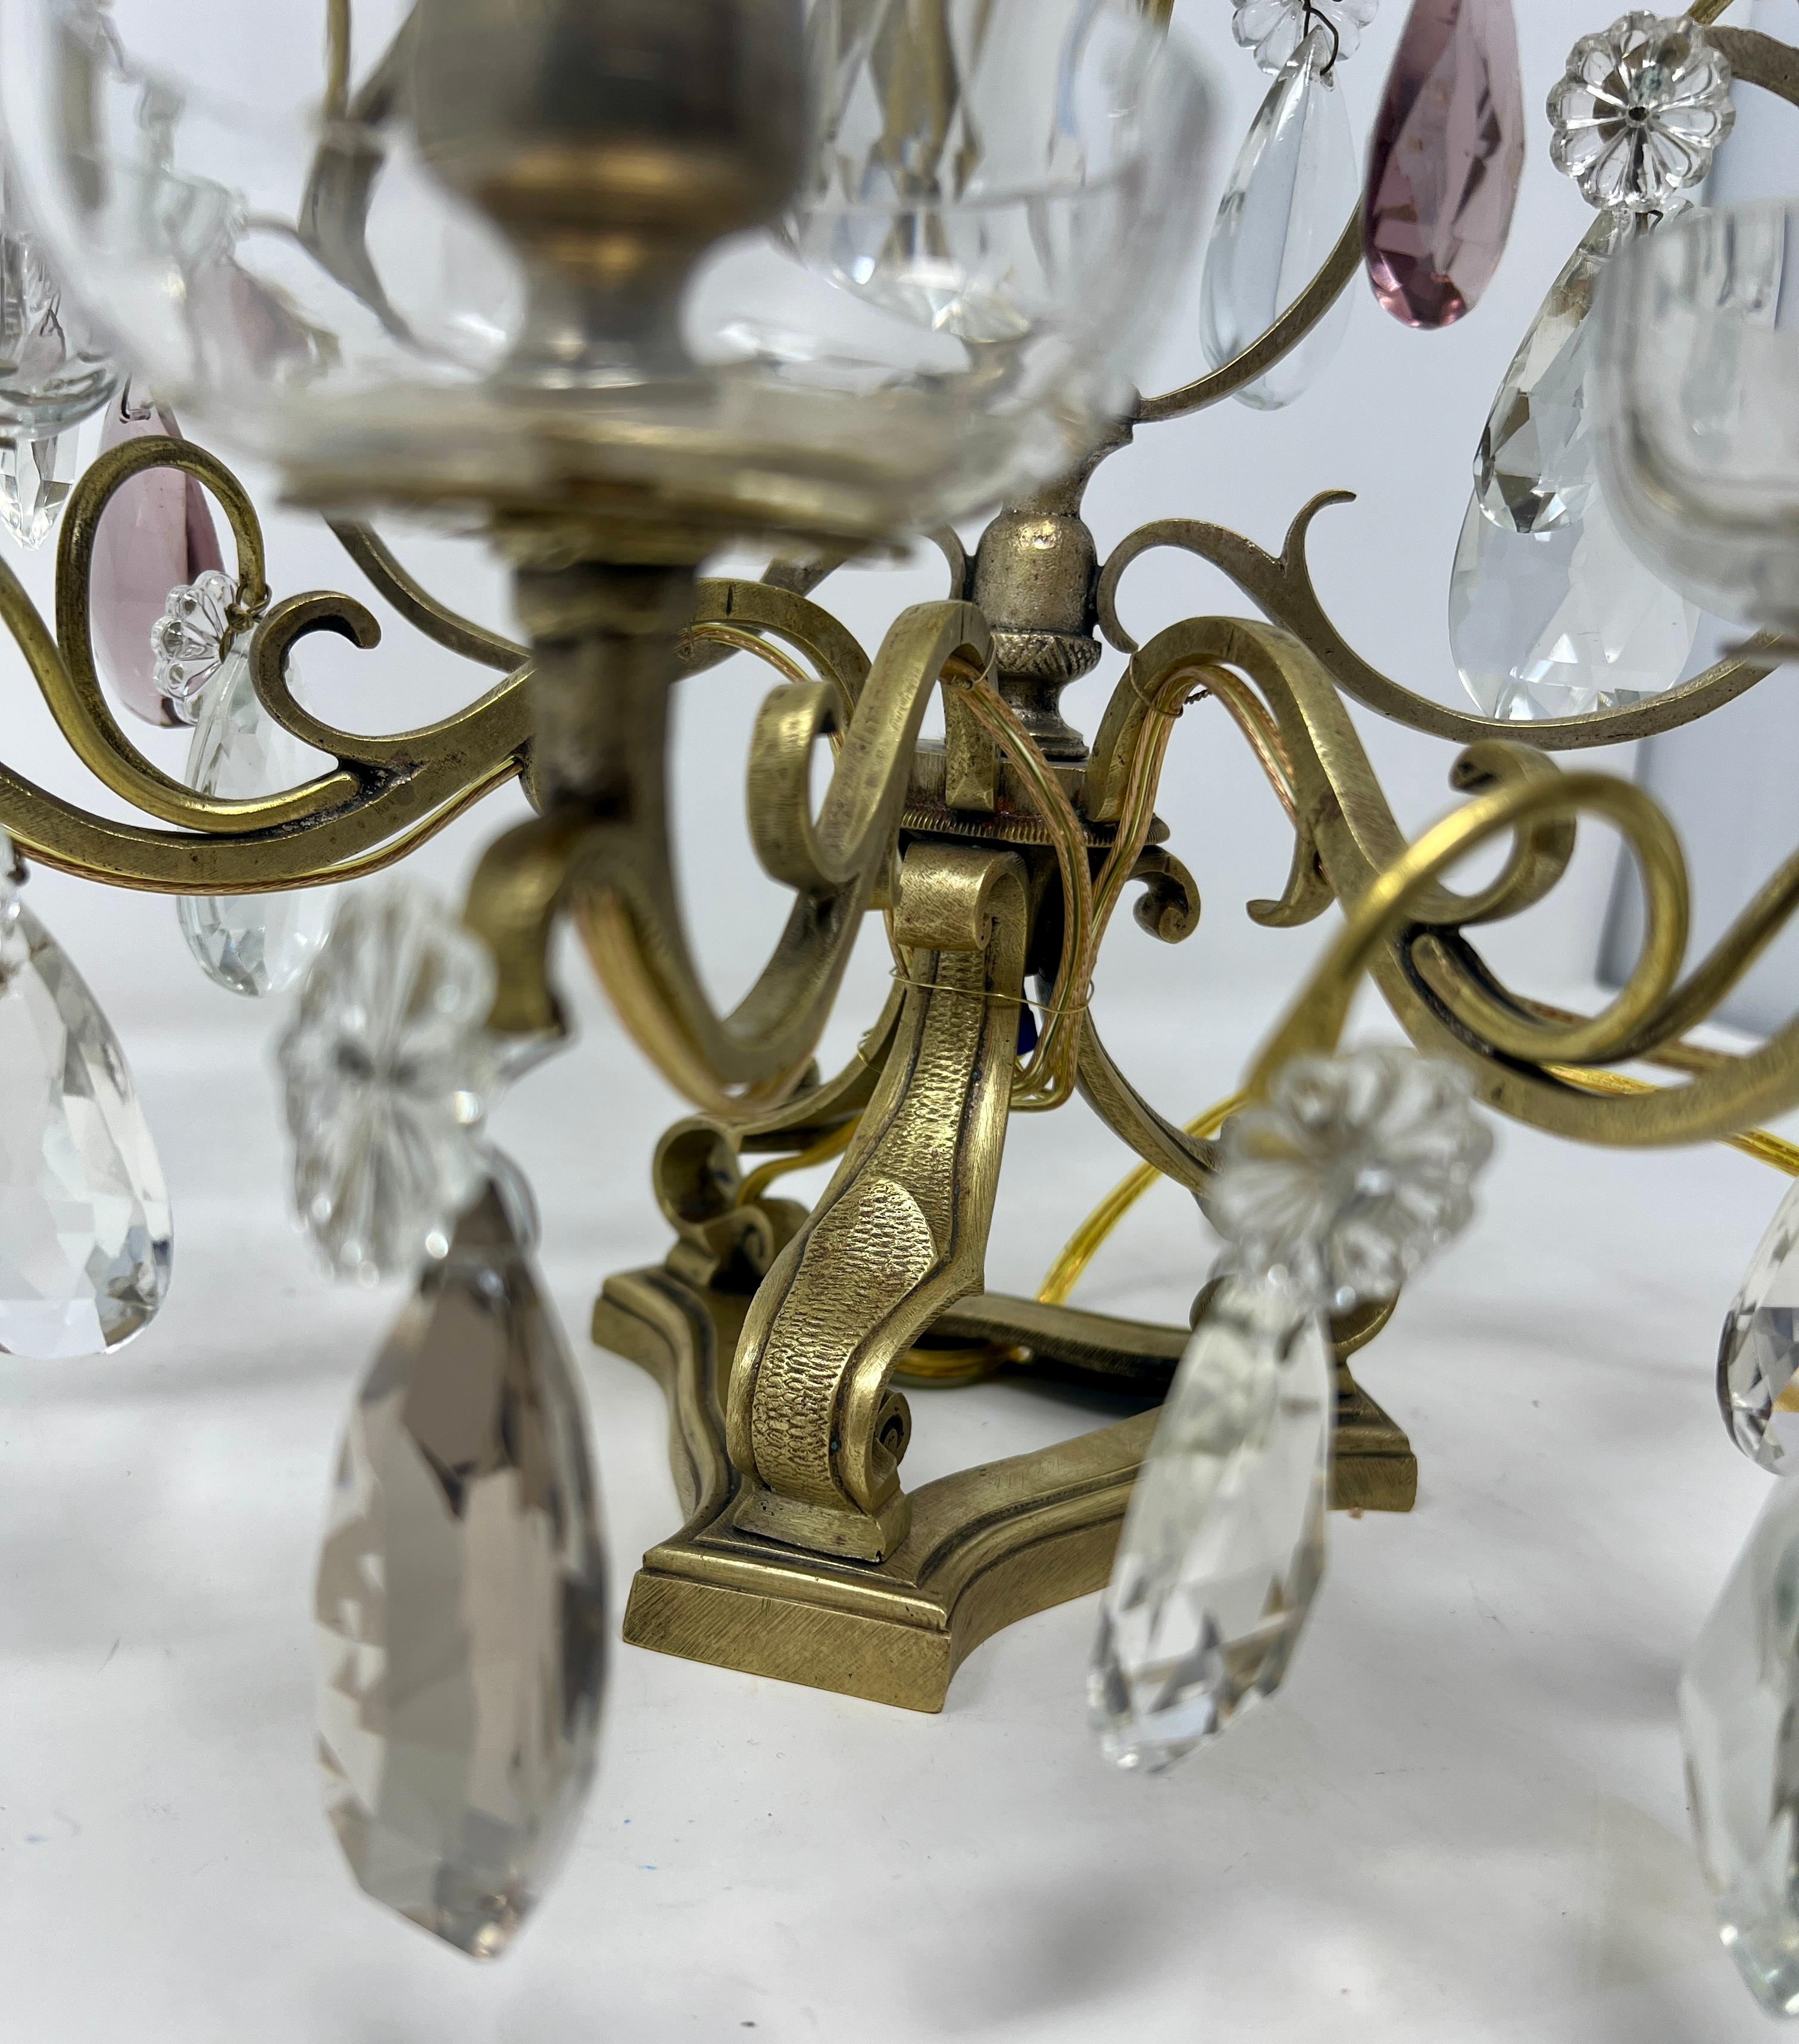 Paar antike französische Girandolen aus Goldbronze und geschliffenem Kristall, CIRCA 1870-1880.
Hübsche Kerzenlampen mit klaren, amethyst- und bernsteinfarbenen Kristallprismen.